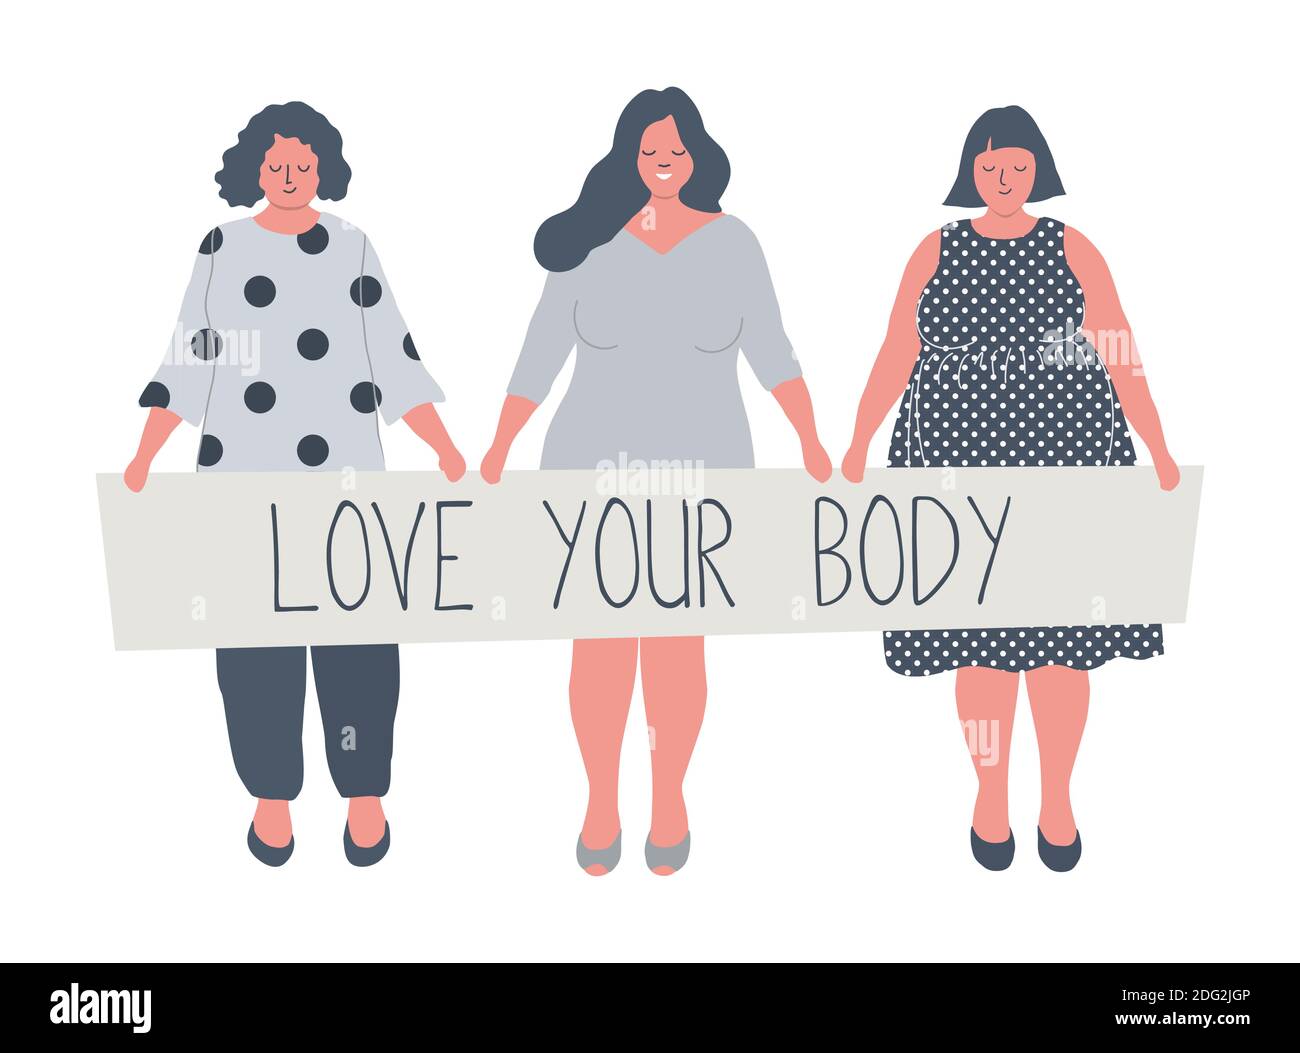 Plump Frauen stehen zusammen und halten ein Poster "Love Your Body". Mädchen in Übergröße. Body positive Konzept. Vektor-Illustration in flacher funky Stil. Stock Vektor